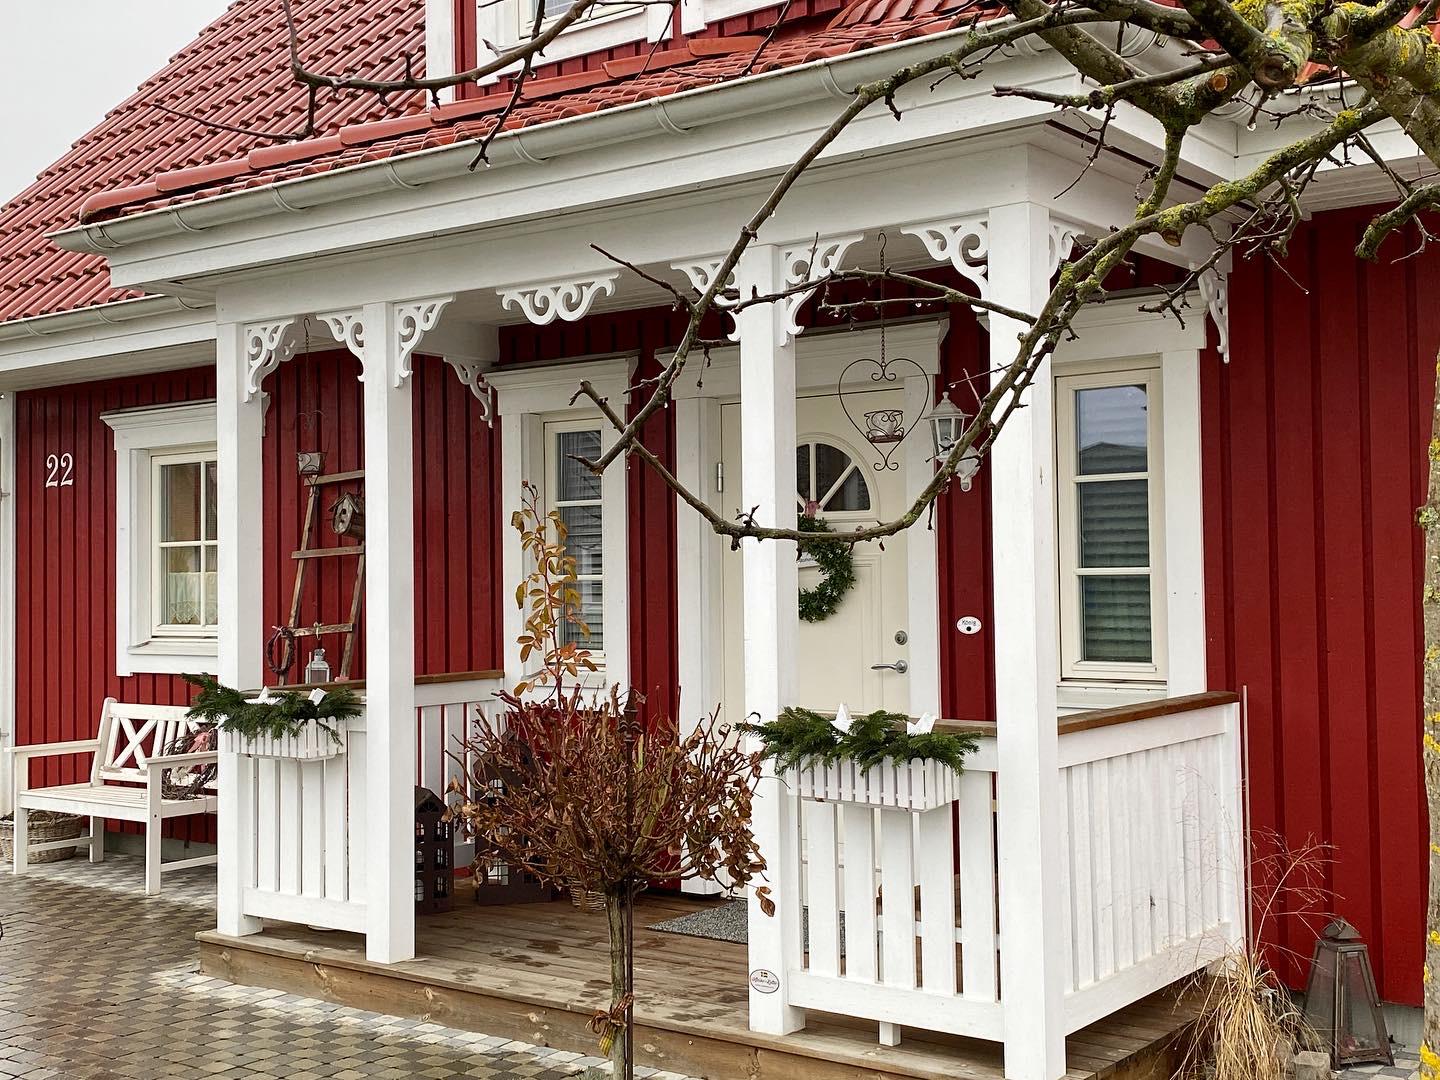 Konsol 016 och mittdekor 016 på rött hus med vit farstukvist - En veranda och brokvist med inspiration från Dala-stil, Mora, Jugend och 1800-tal